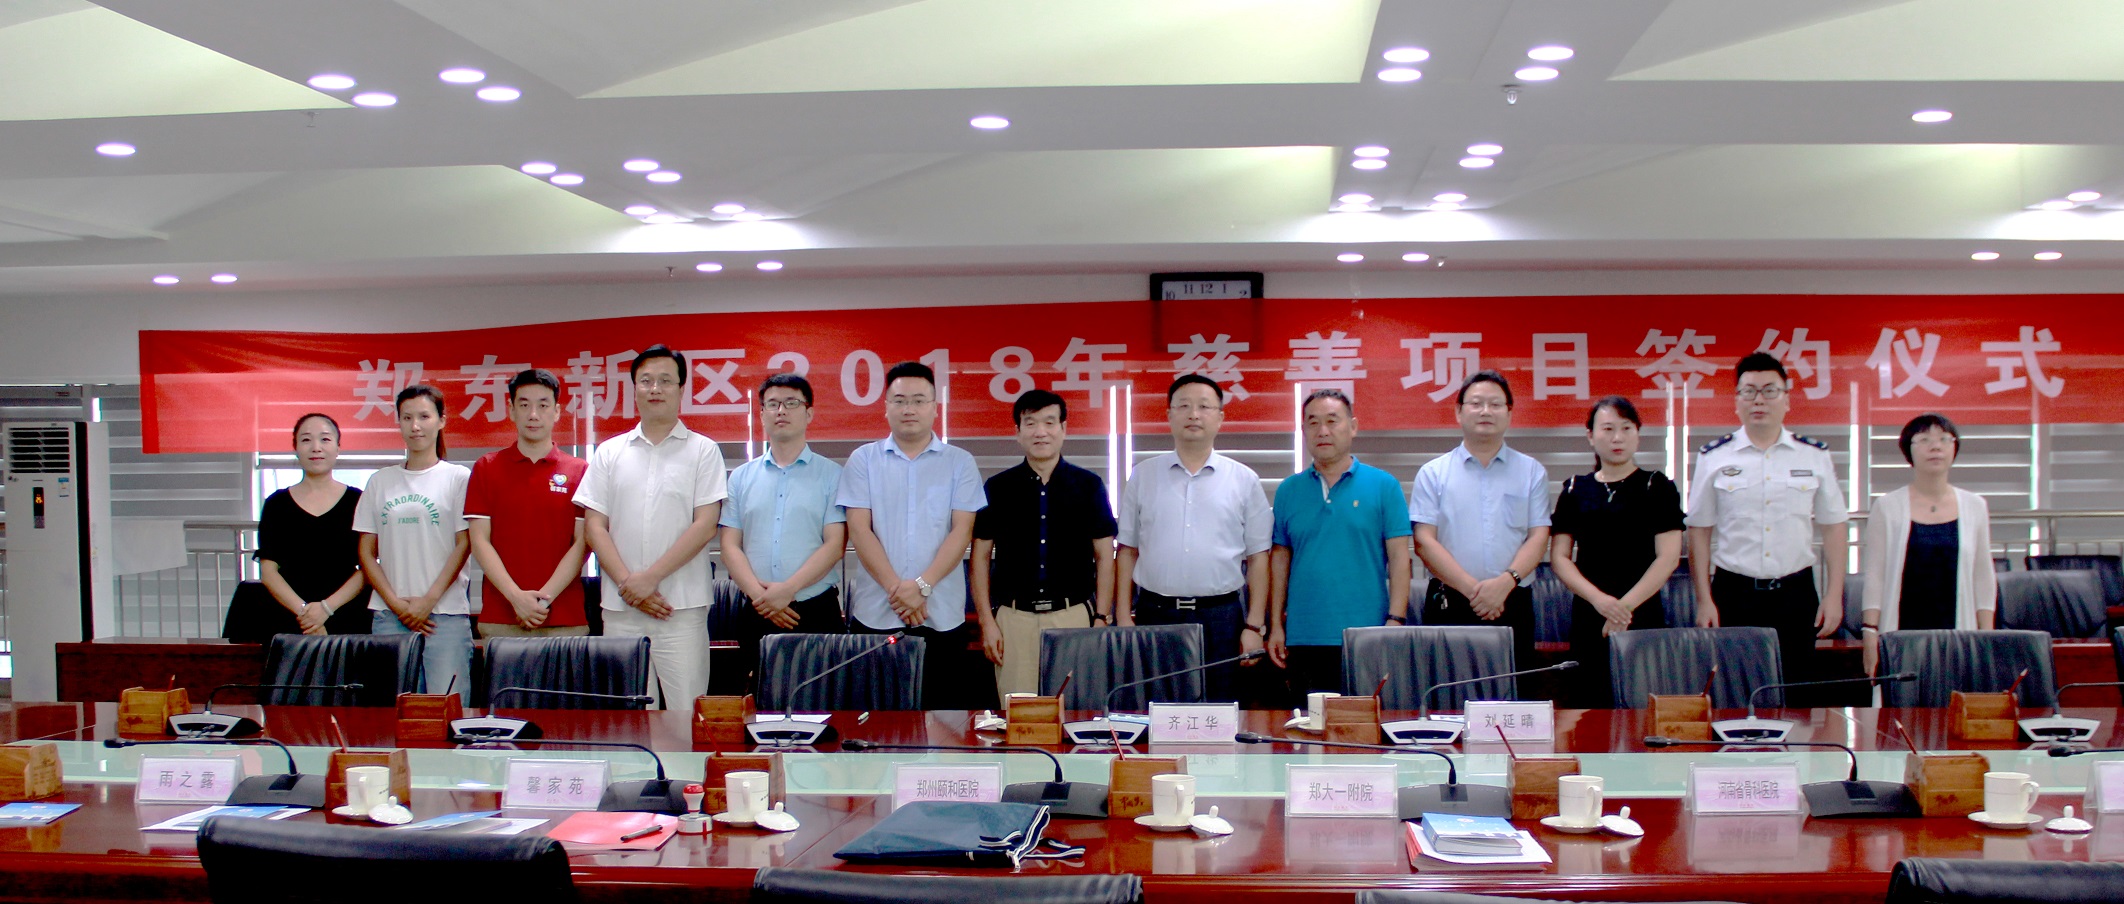 政安消防河南分中心签约郑东新区慈善项目 着力提升群众平安幸福感